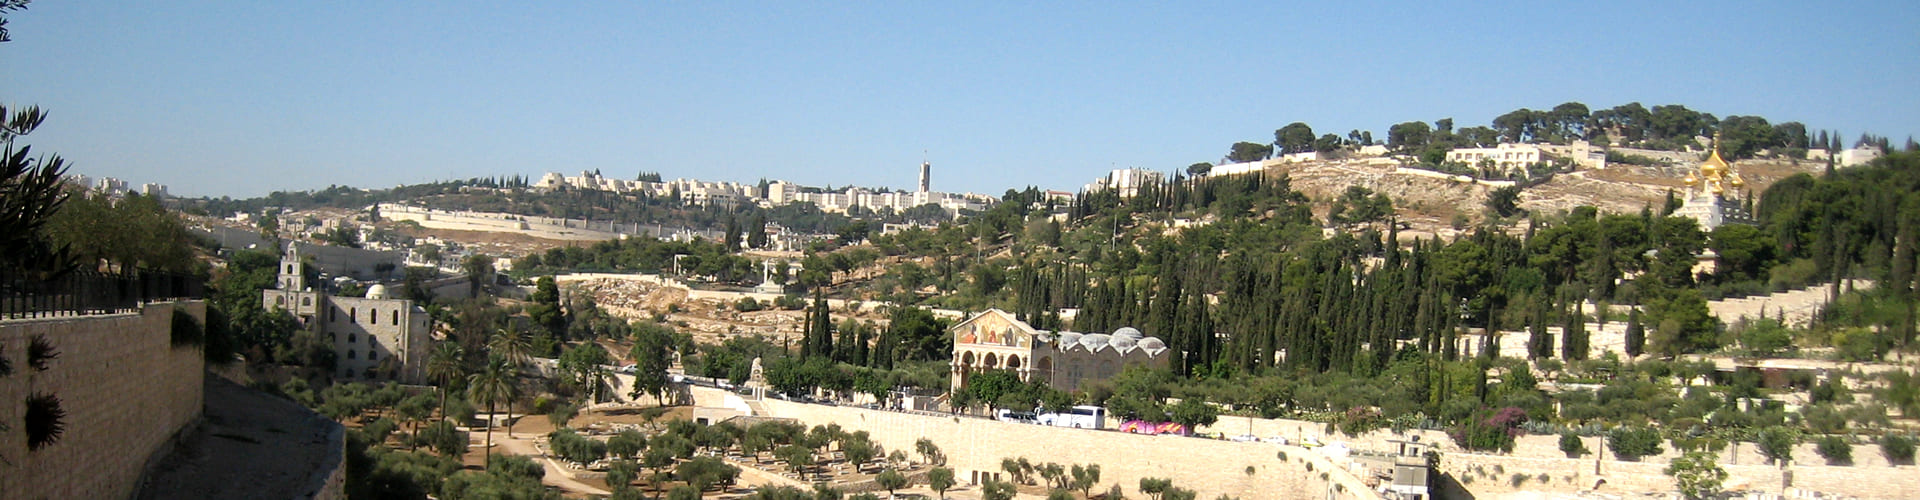 Масличная гора в Иерусалиме